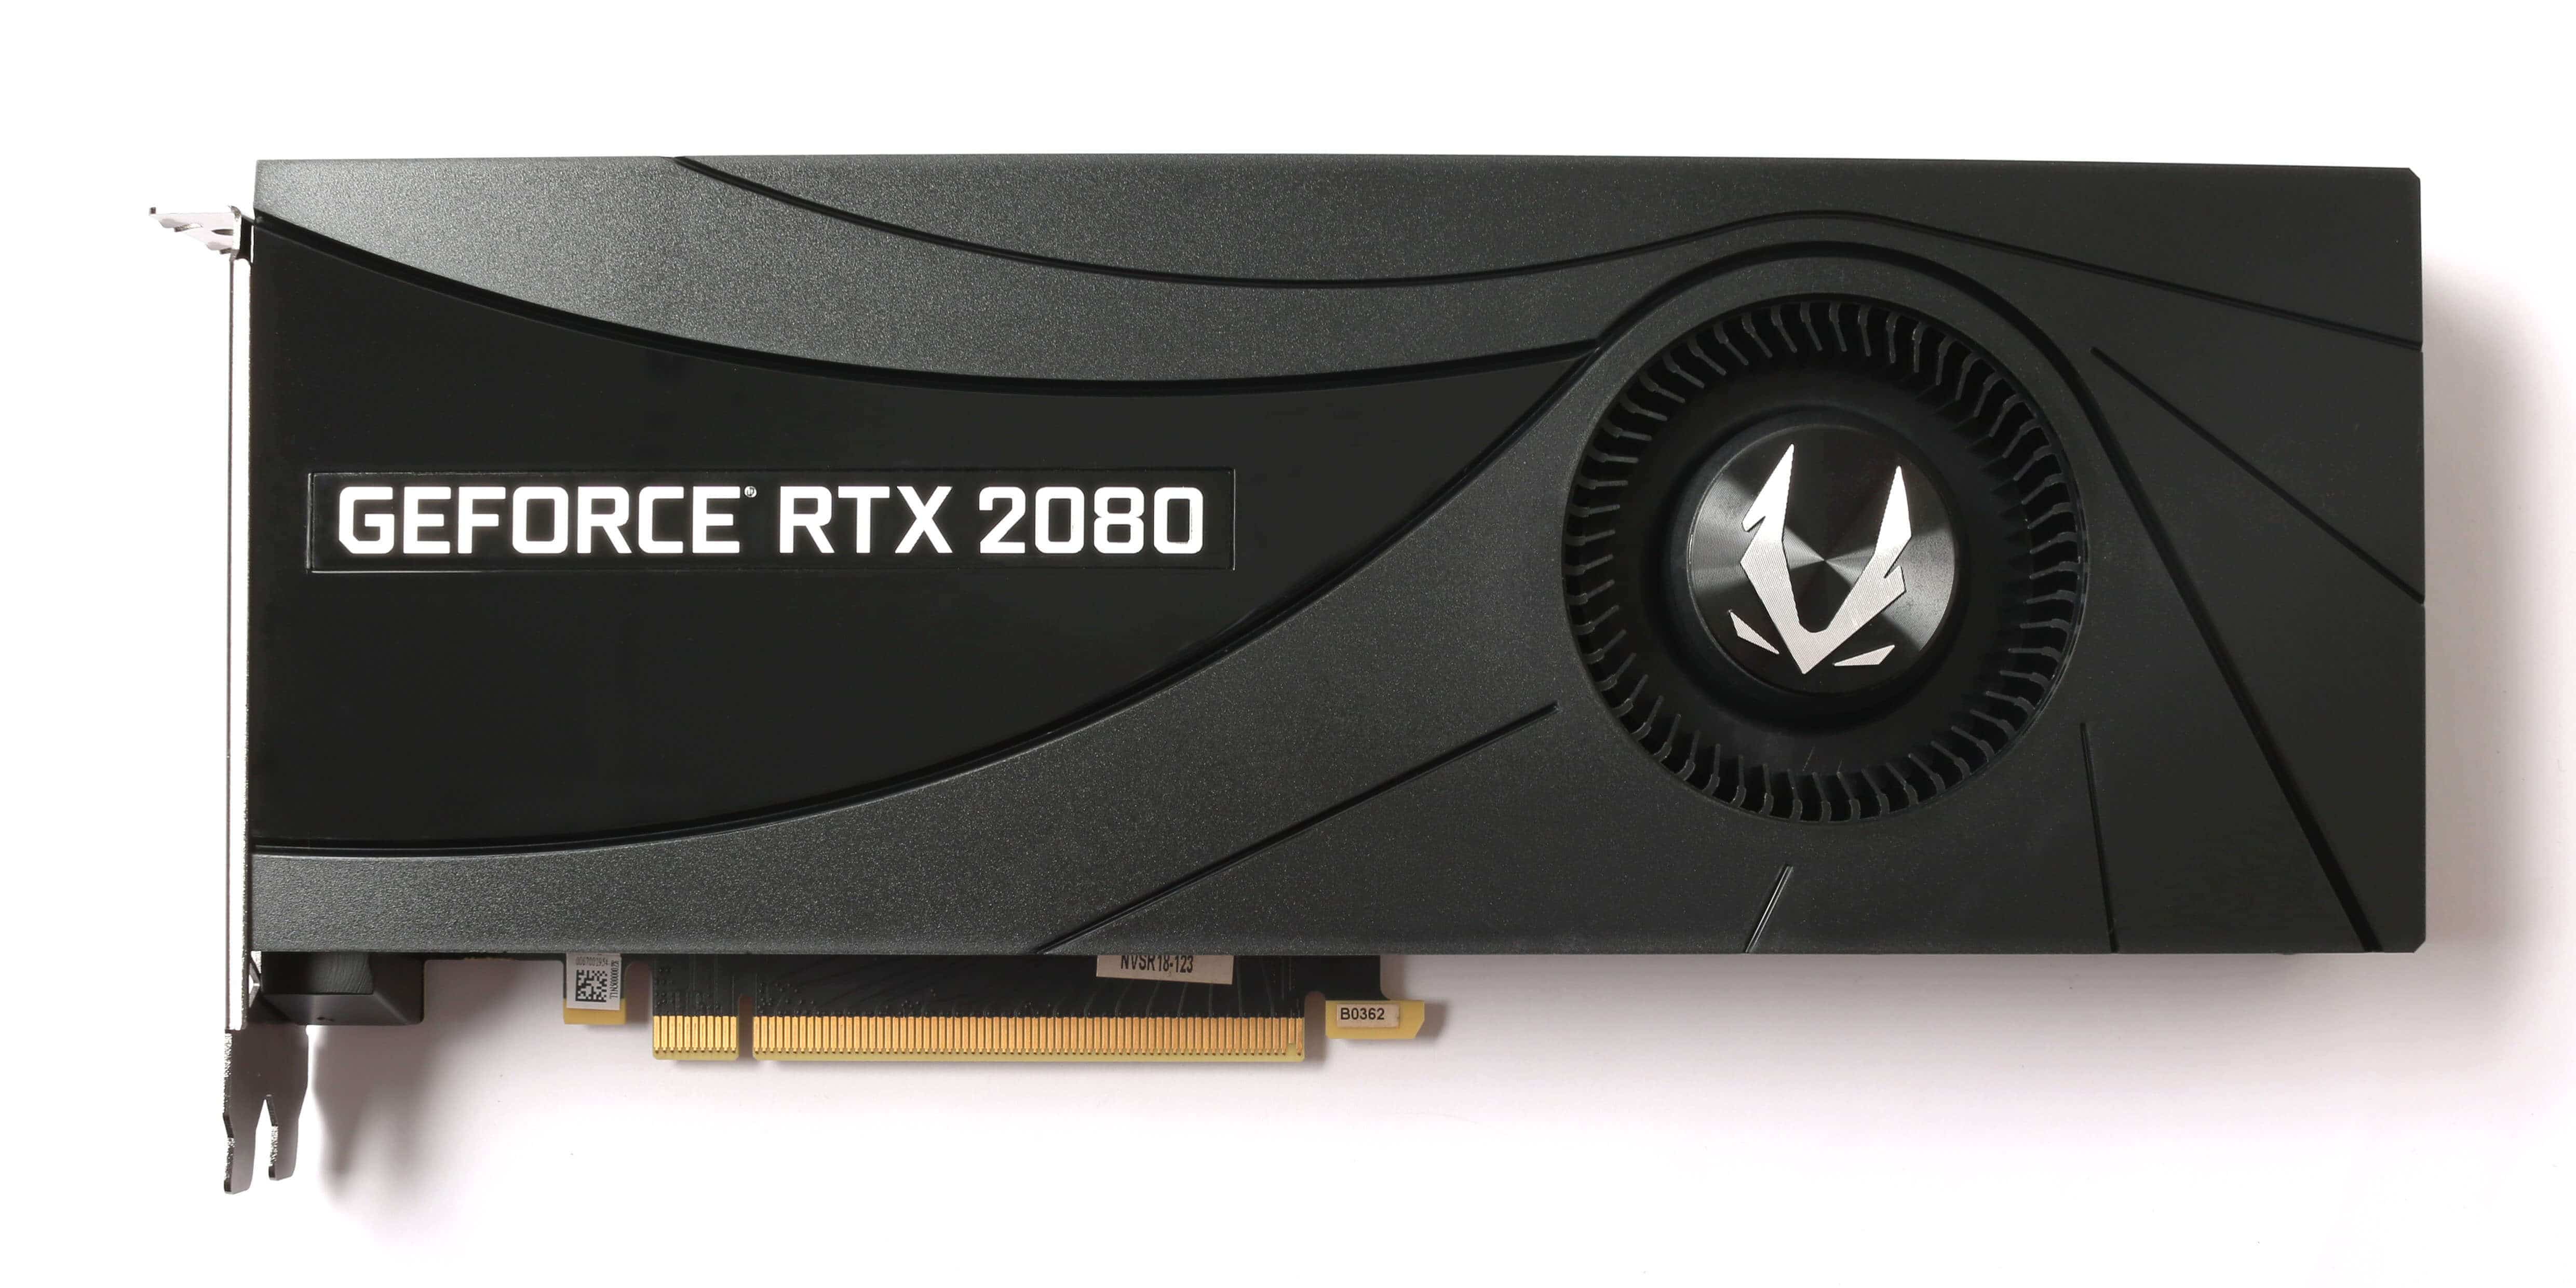 ZOTAC GAMING 隆重推出 最新一代 GeForce RTX 20 顯示卡系列 | XFastest News